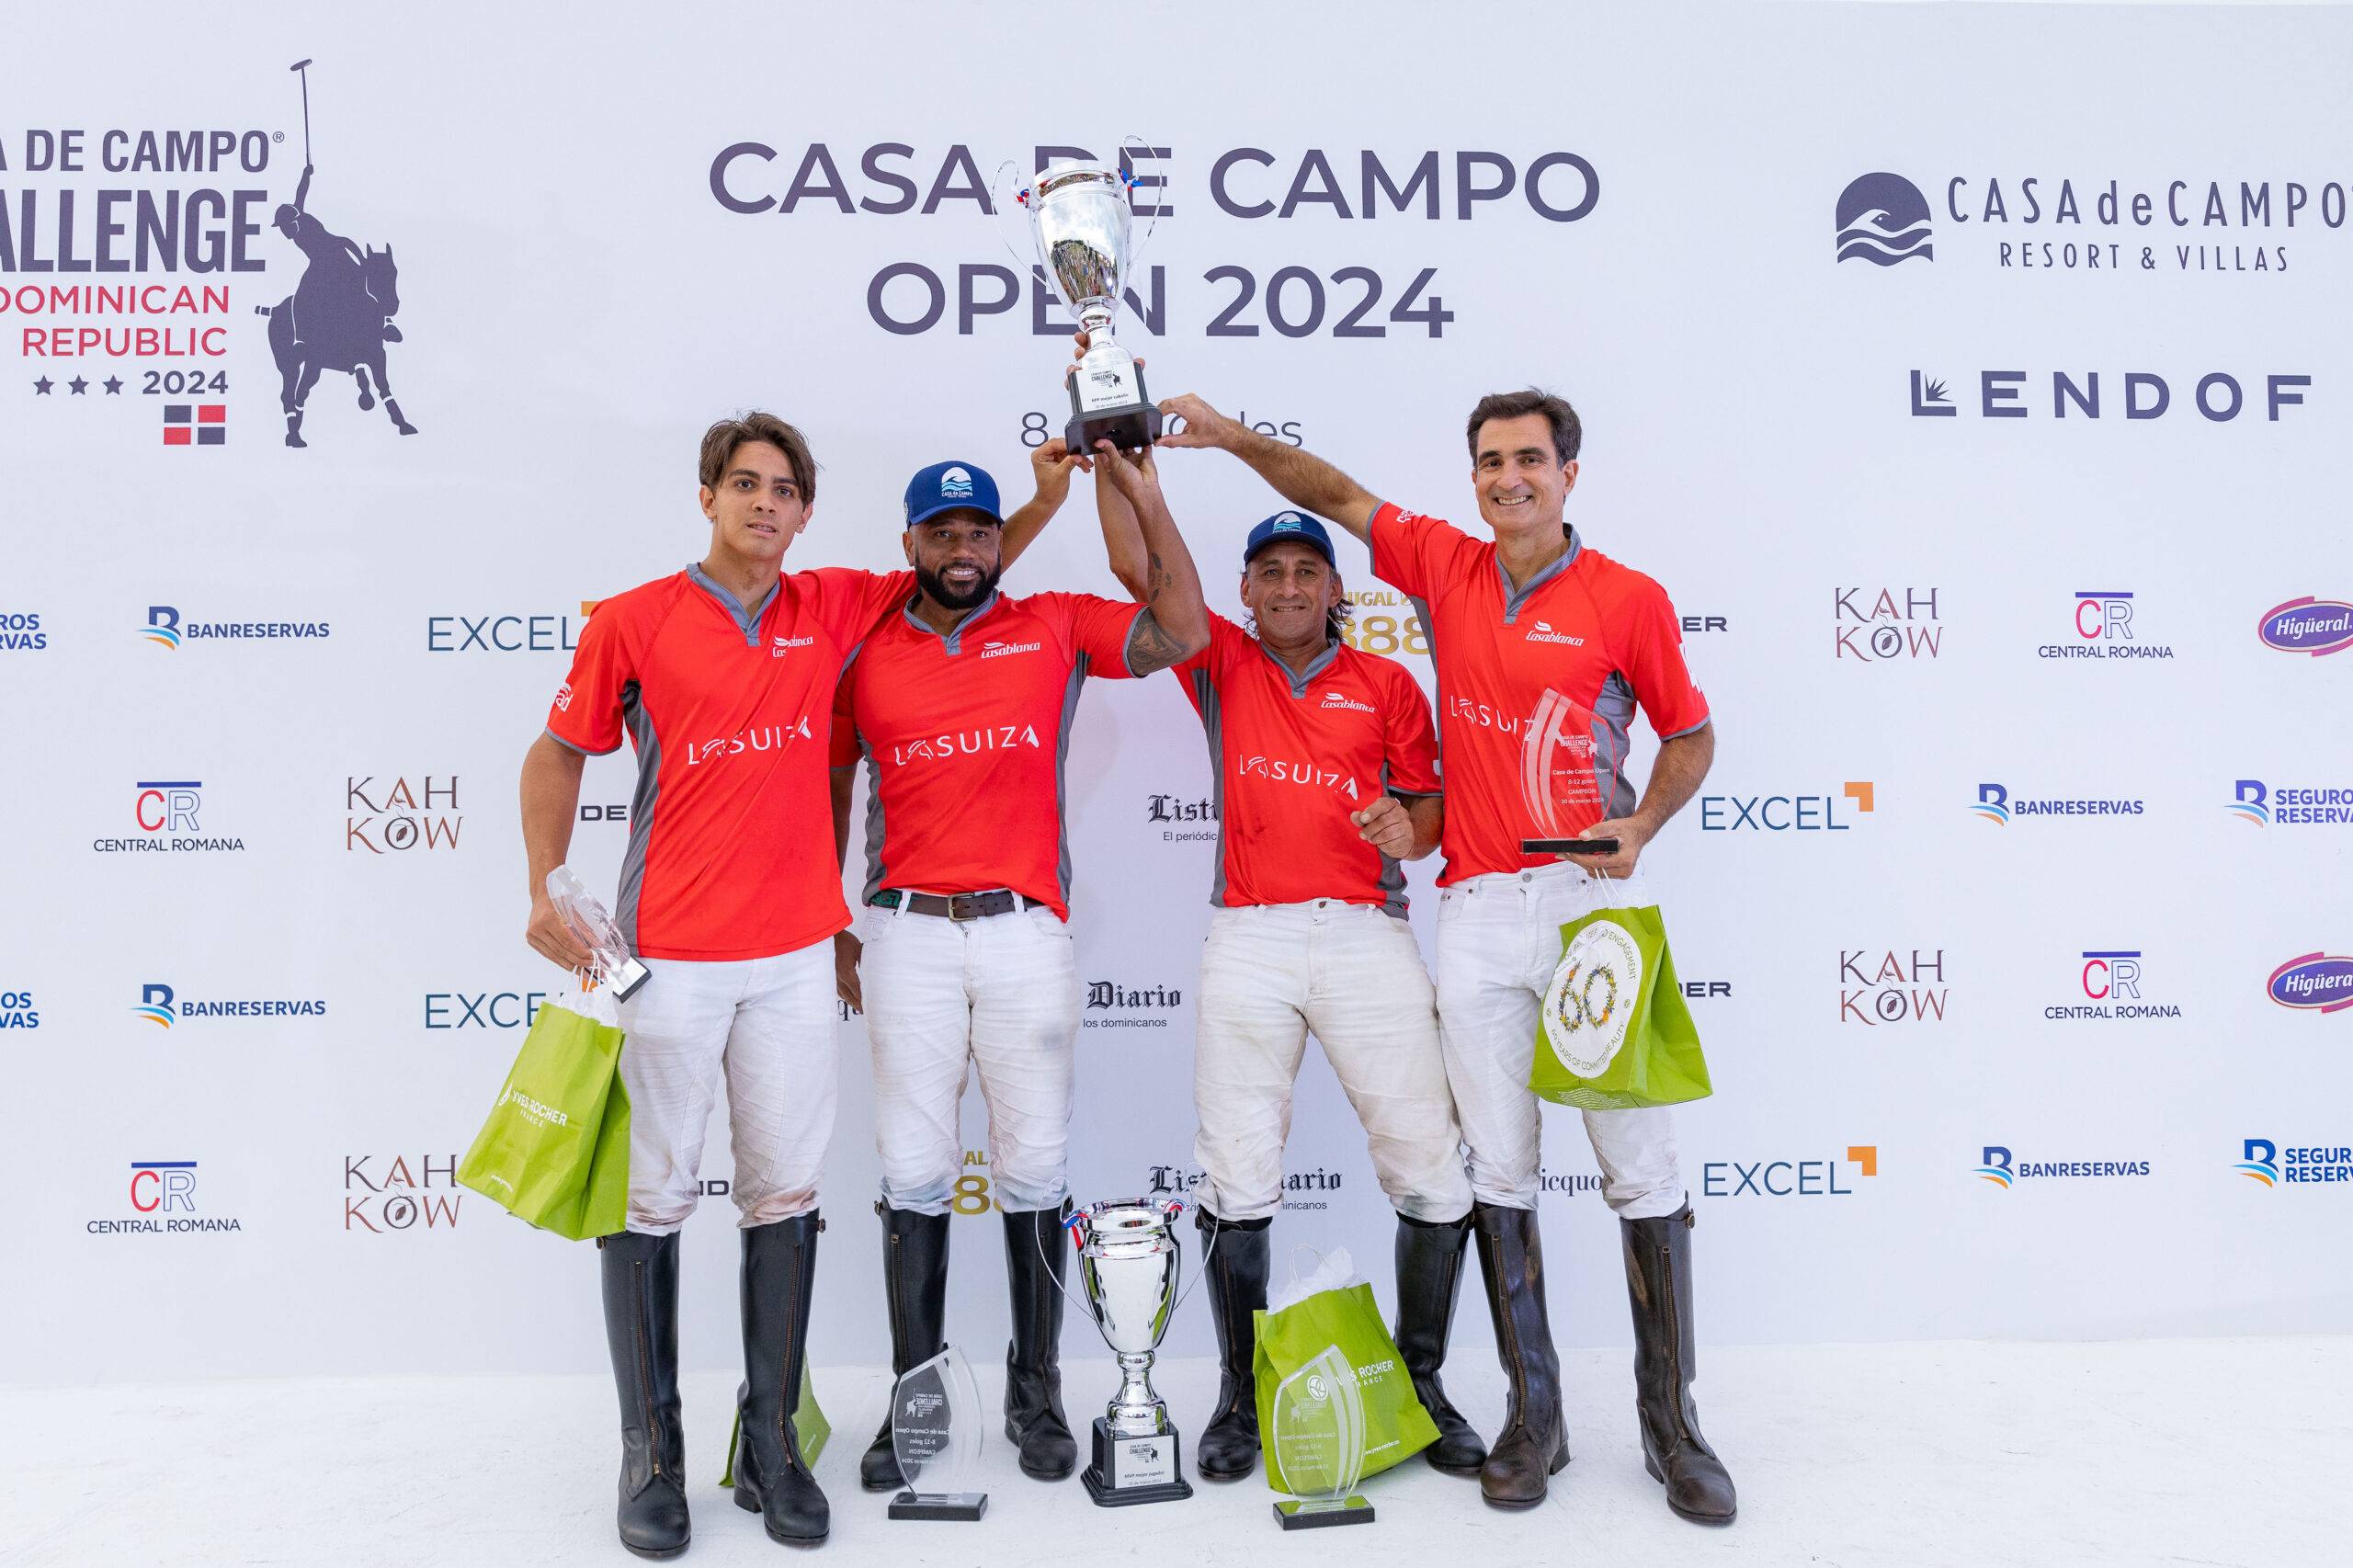 Equipo La Suiza, campeón de la gran final del Casa de Campo Open 2024 de polo